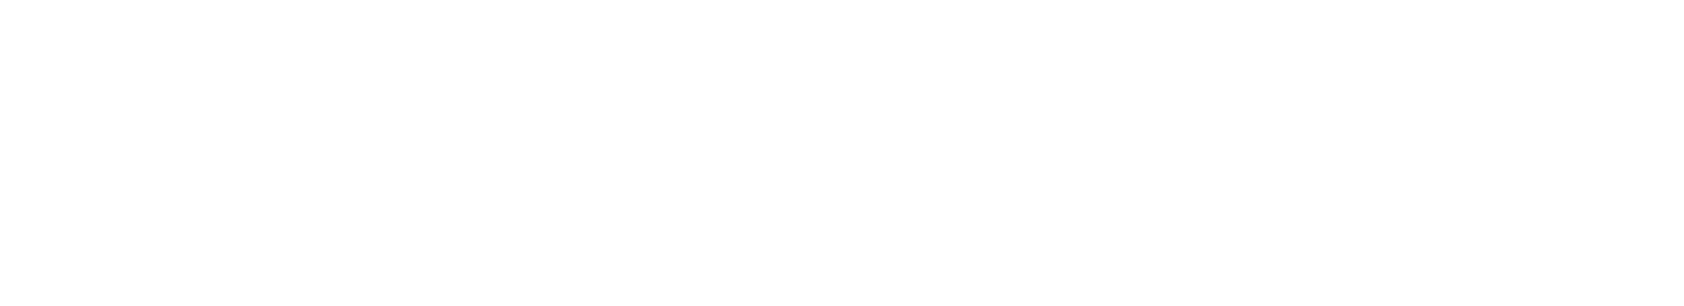 El Brasero de Rusty